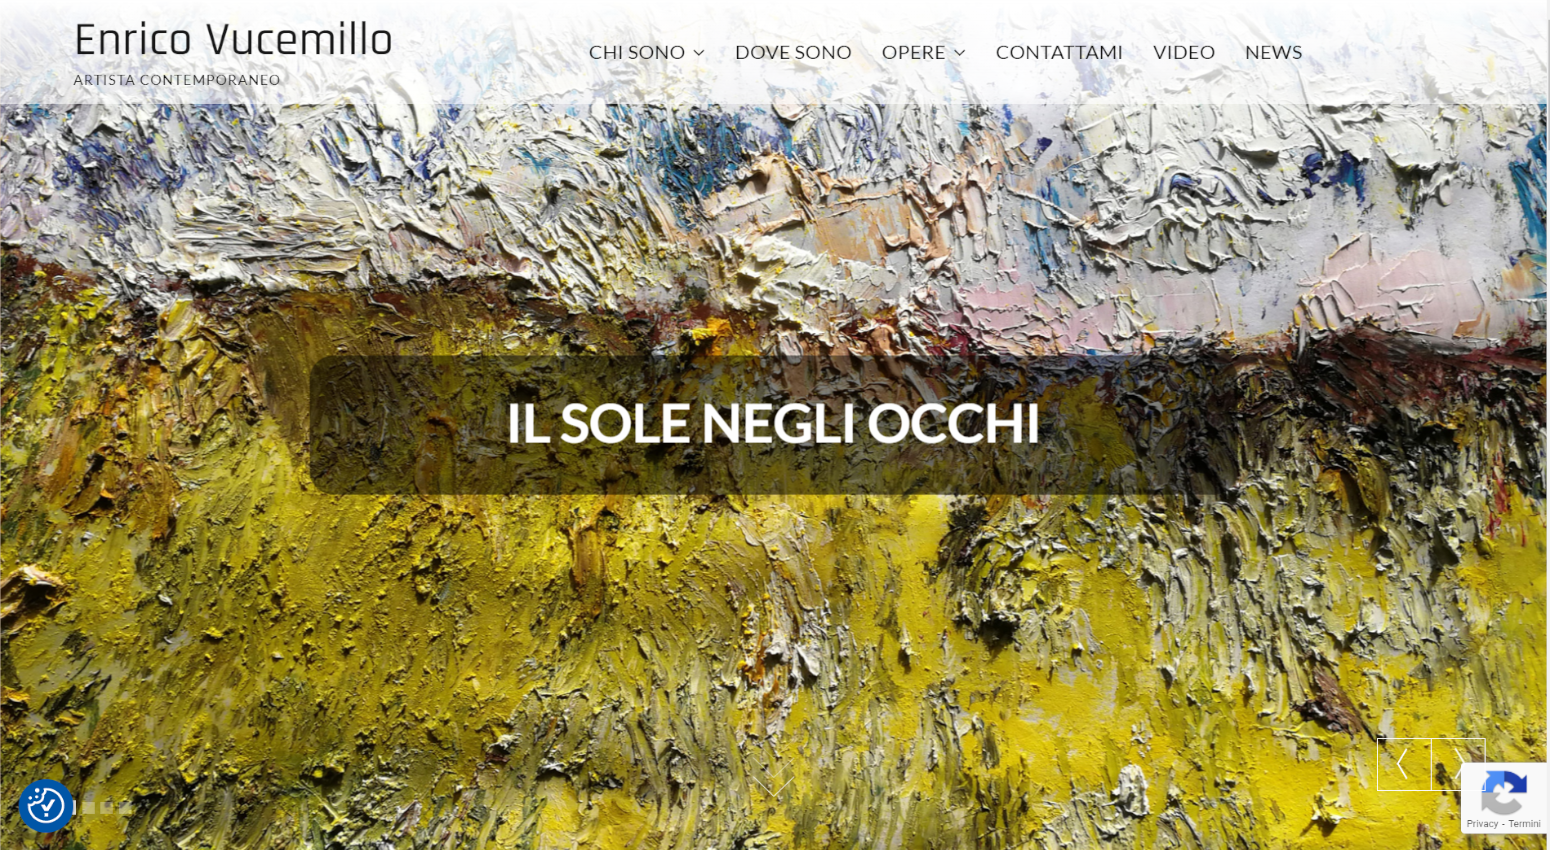 Sito web dell'artista contemporaneo Enrico Vucemillo dedicato alla promozione dell'arte e alla vendita di quadri online